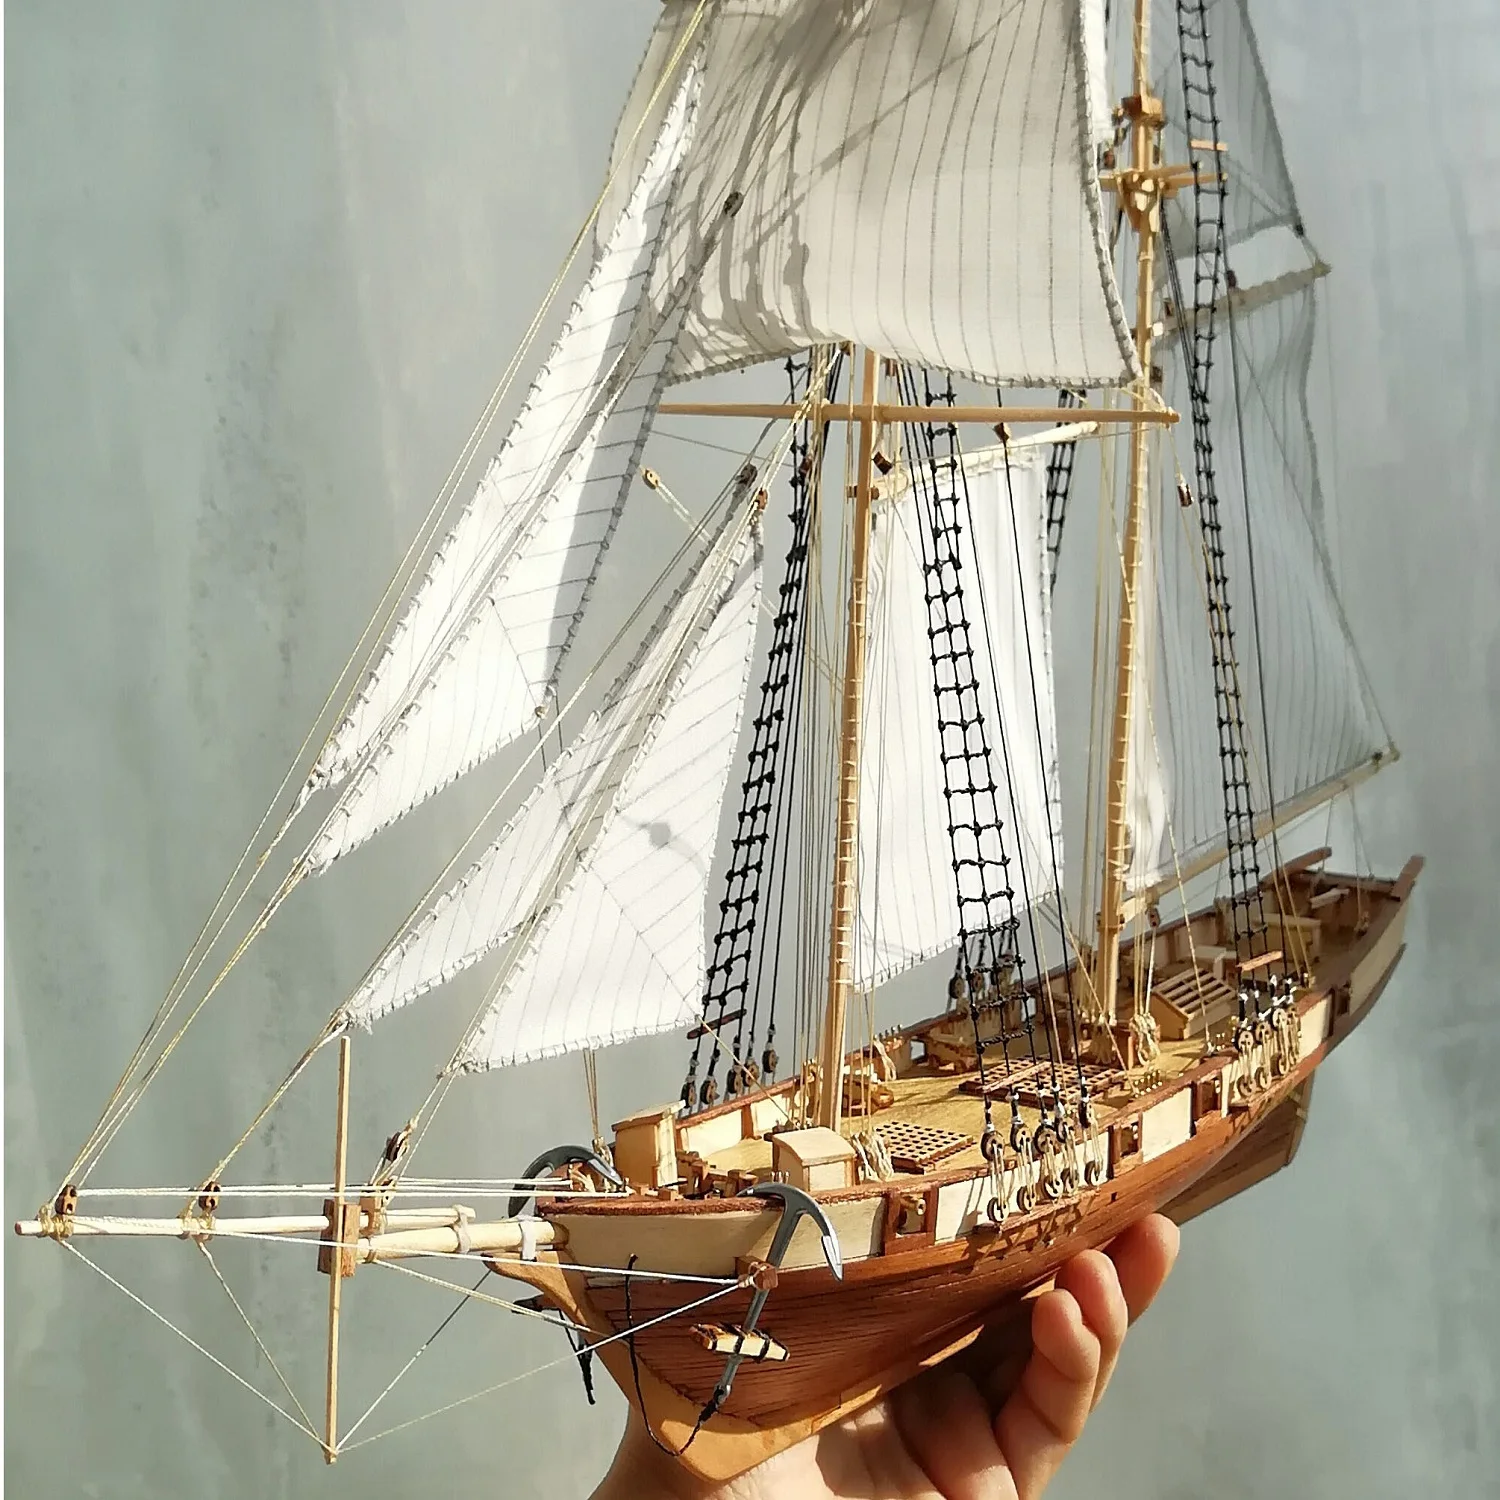 Ocamo Montaje de Kits de construcción Barco Modelo Velero de Madera Juguetes Harvey Modelo de navegación Ensamblado Kit de Madera DIY